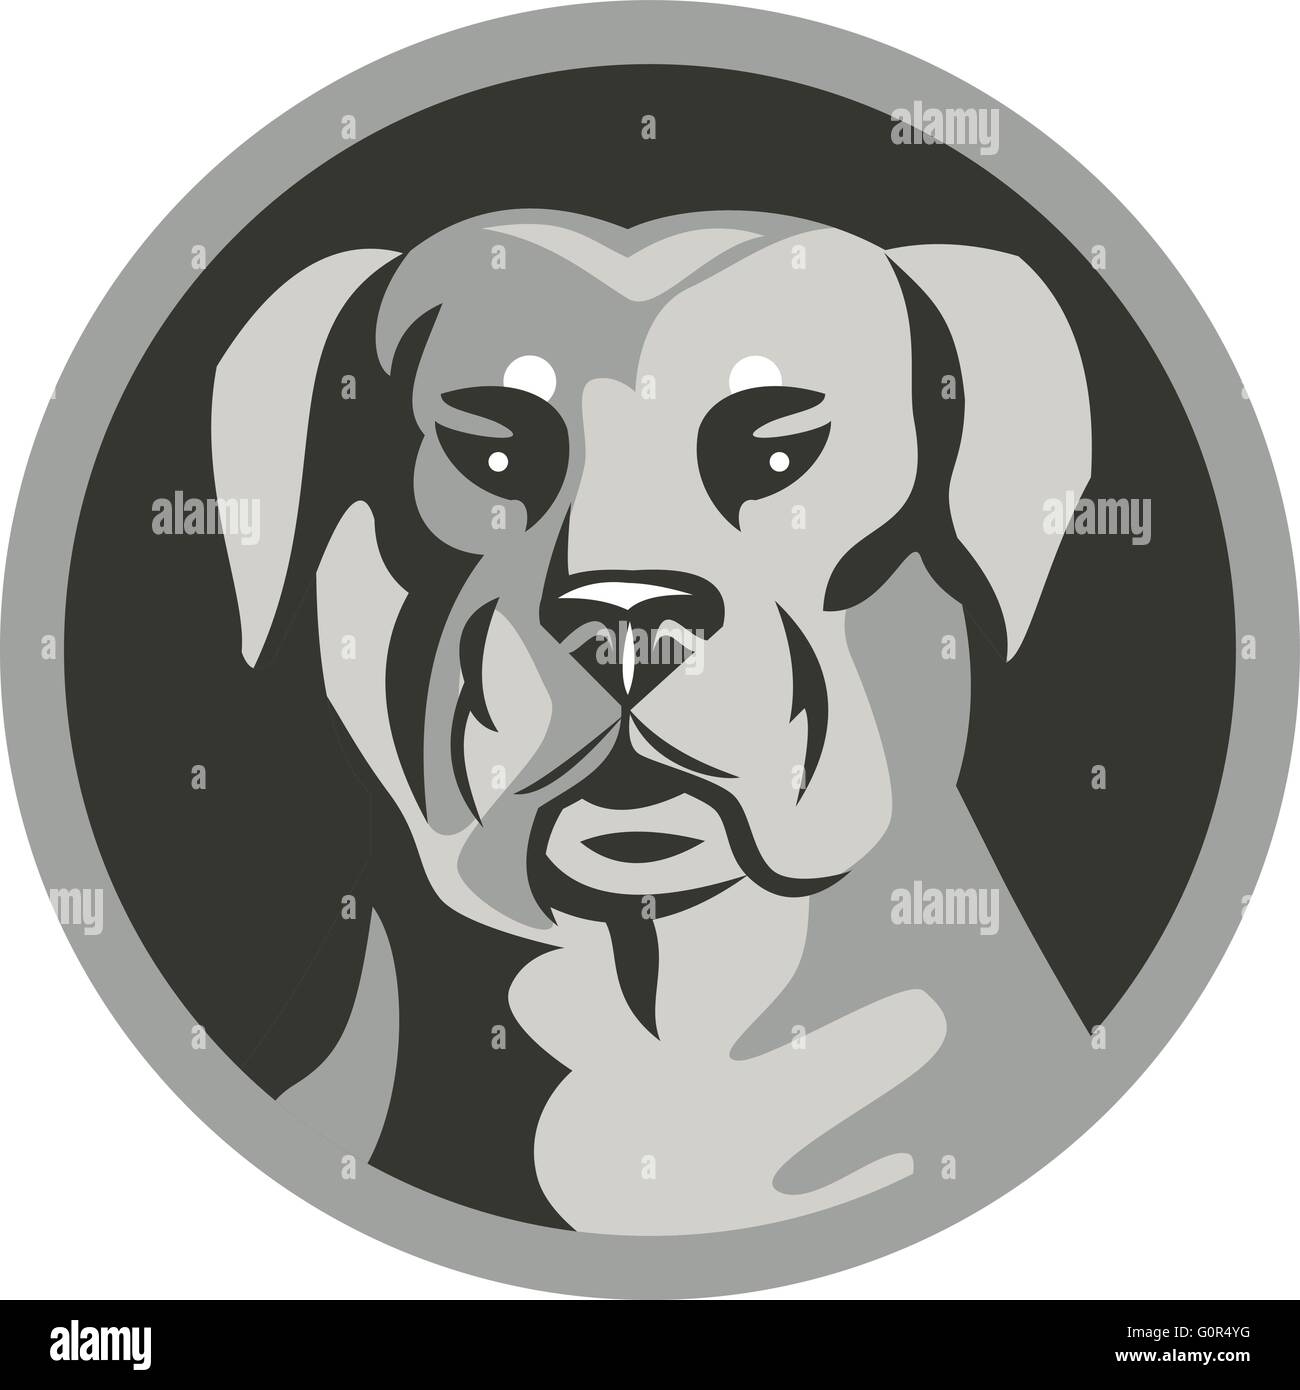 Bianco e nero illustrazione di un rottweiler Metzgerhund mastiff-cane cane da guardia capo visto dal set anteriore cerchio interno fatto in stile retrò. Illustrazione Vettoriale